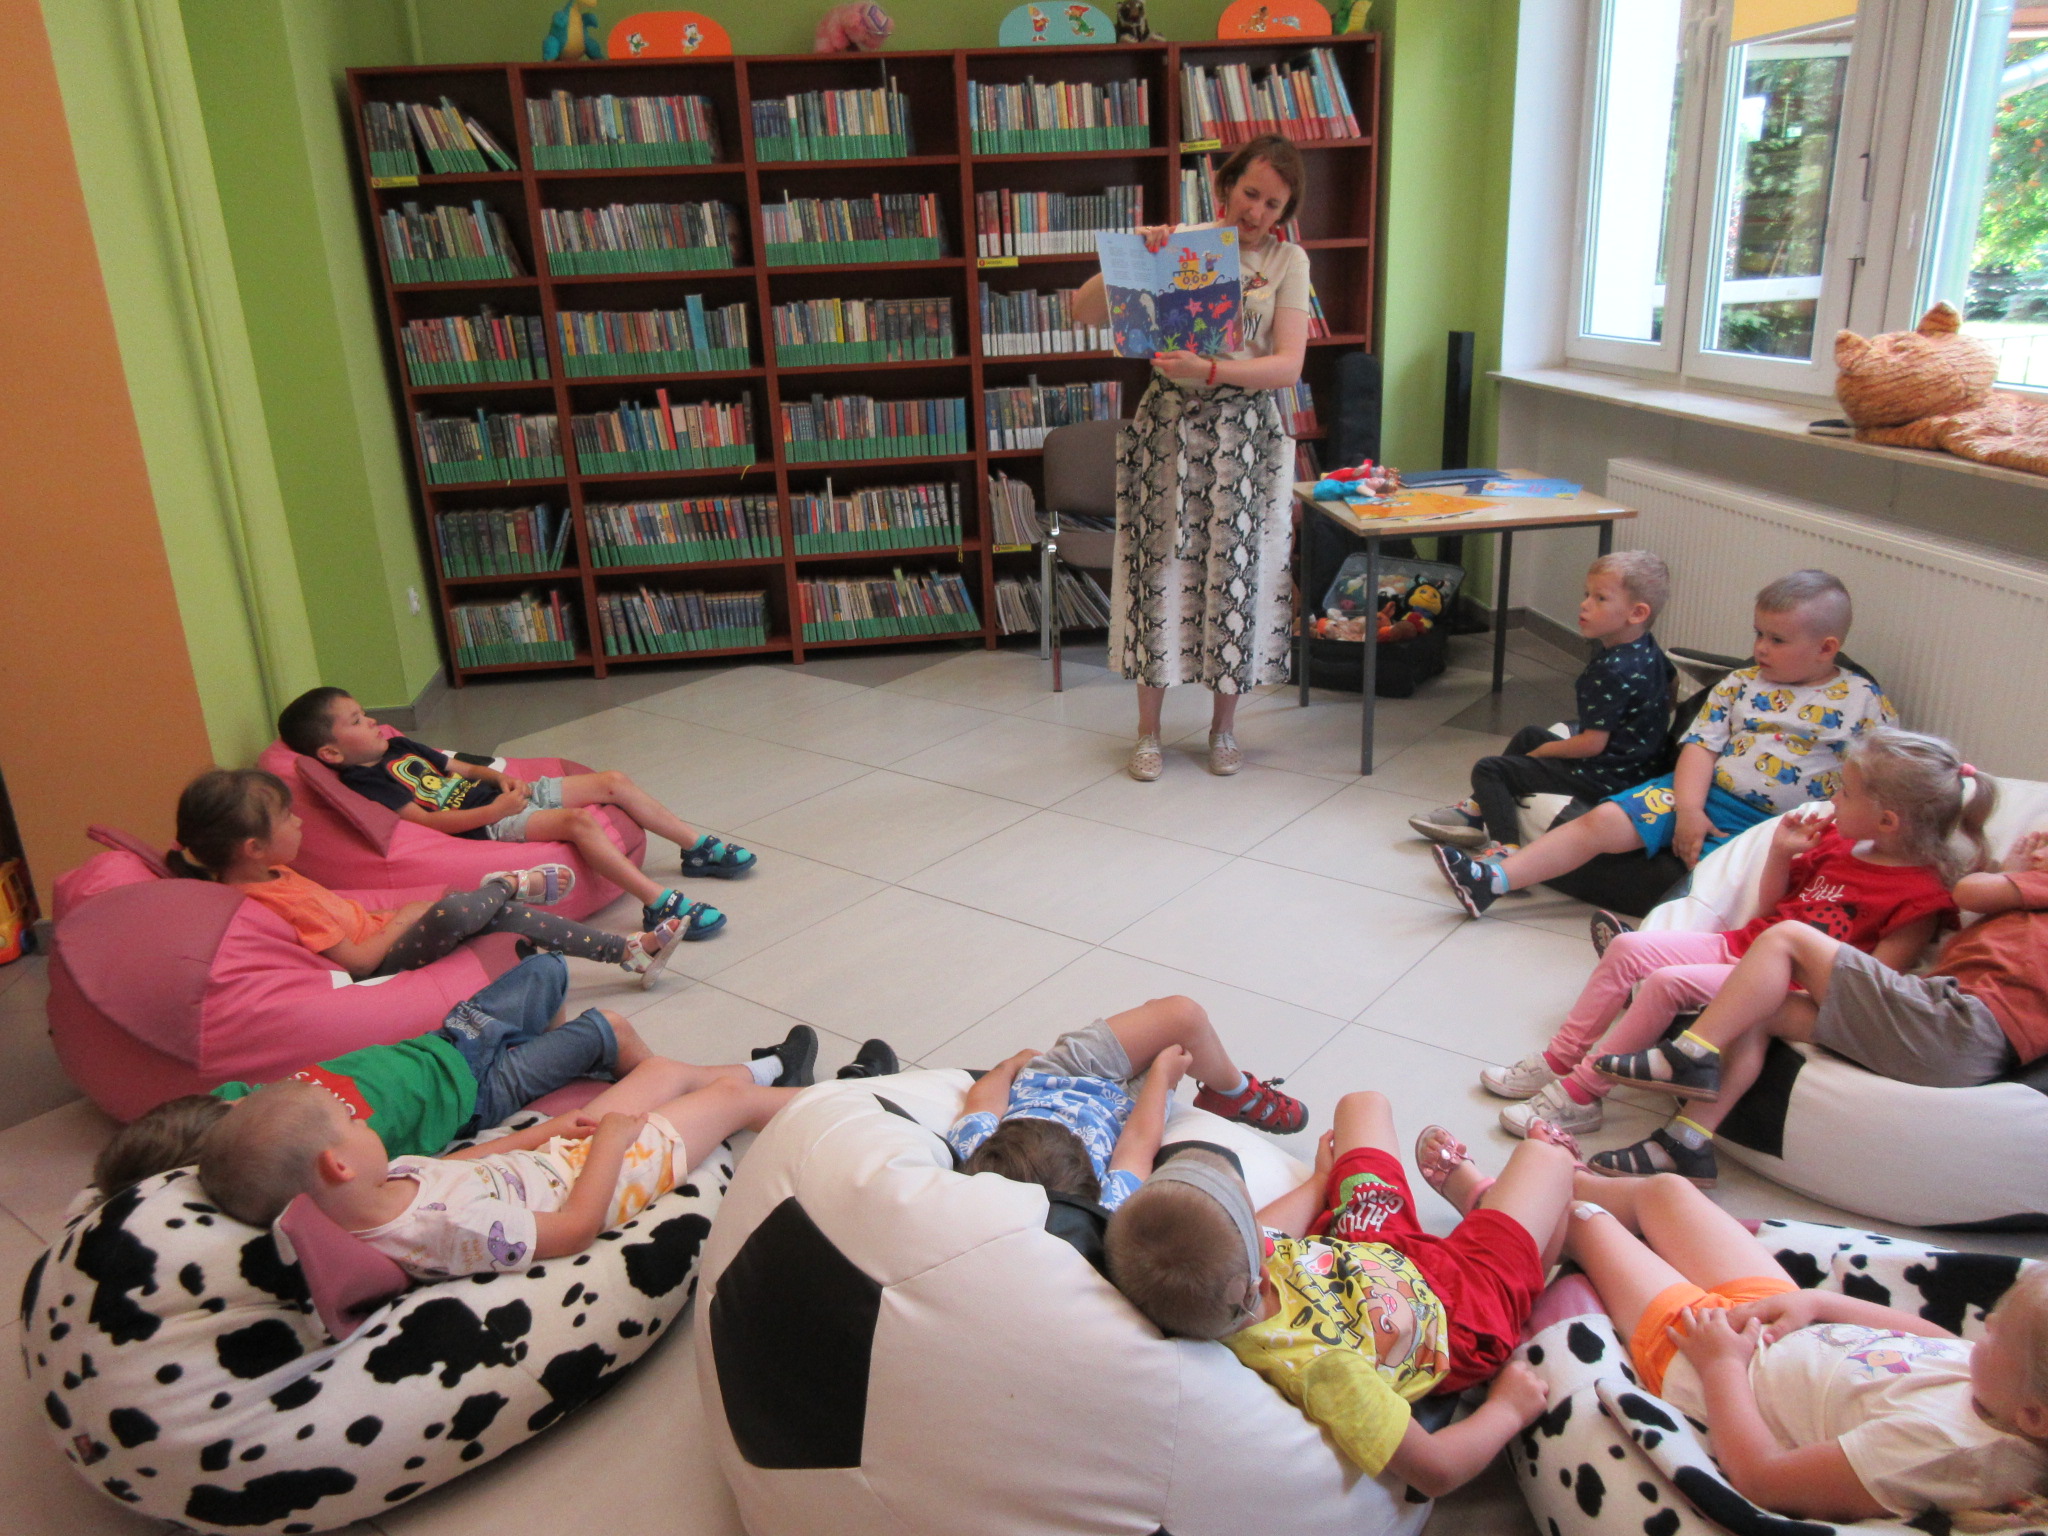 Spotkanie autorskie z Katarzyna Czubała Vyborow. Autorka stoi z rozłożoną książką z ilustracjami. Dzieci leżą na podłodze w półokręgu.